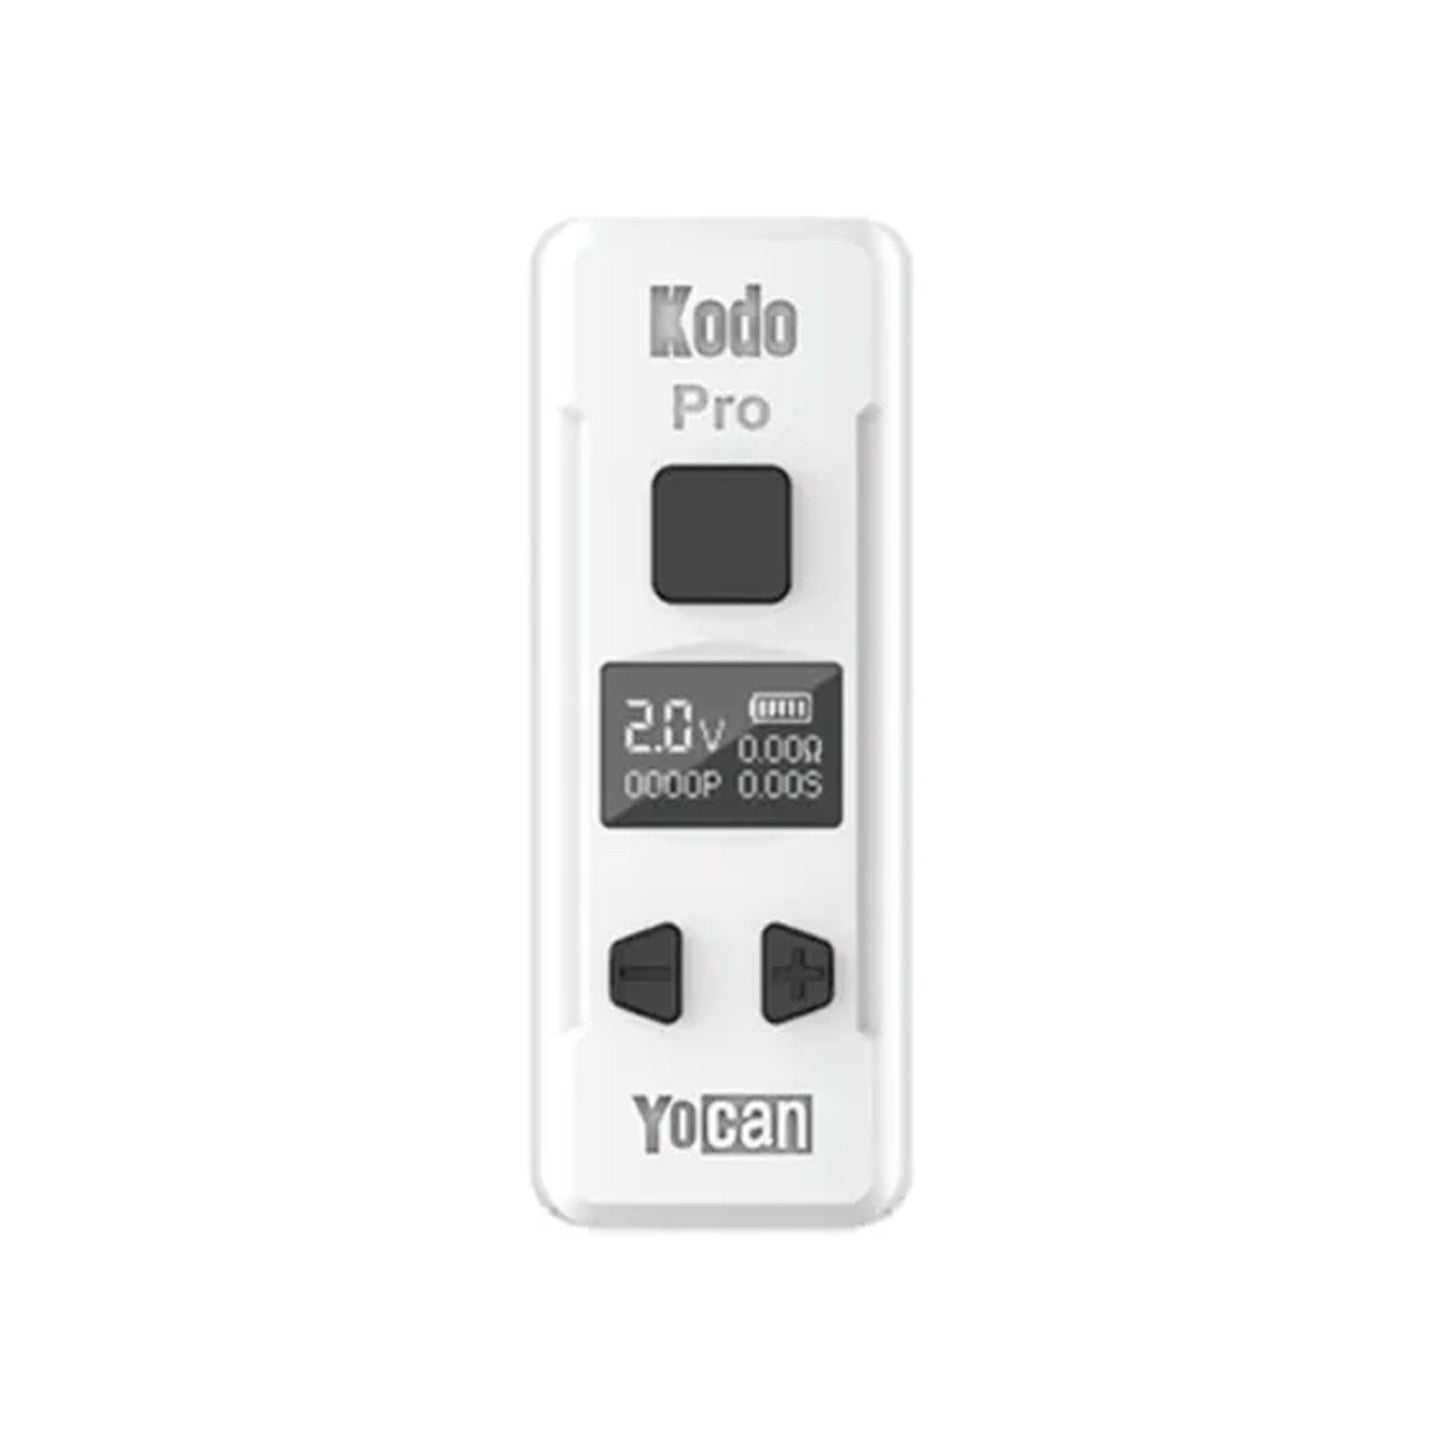 Yocan Kodo Pro 510 Battery